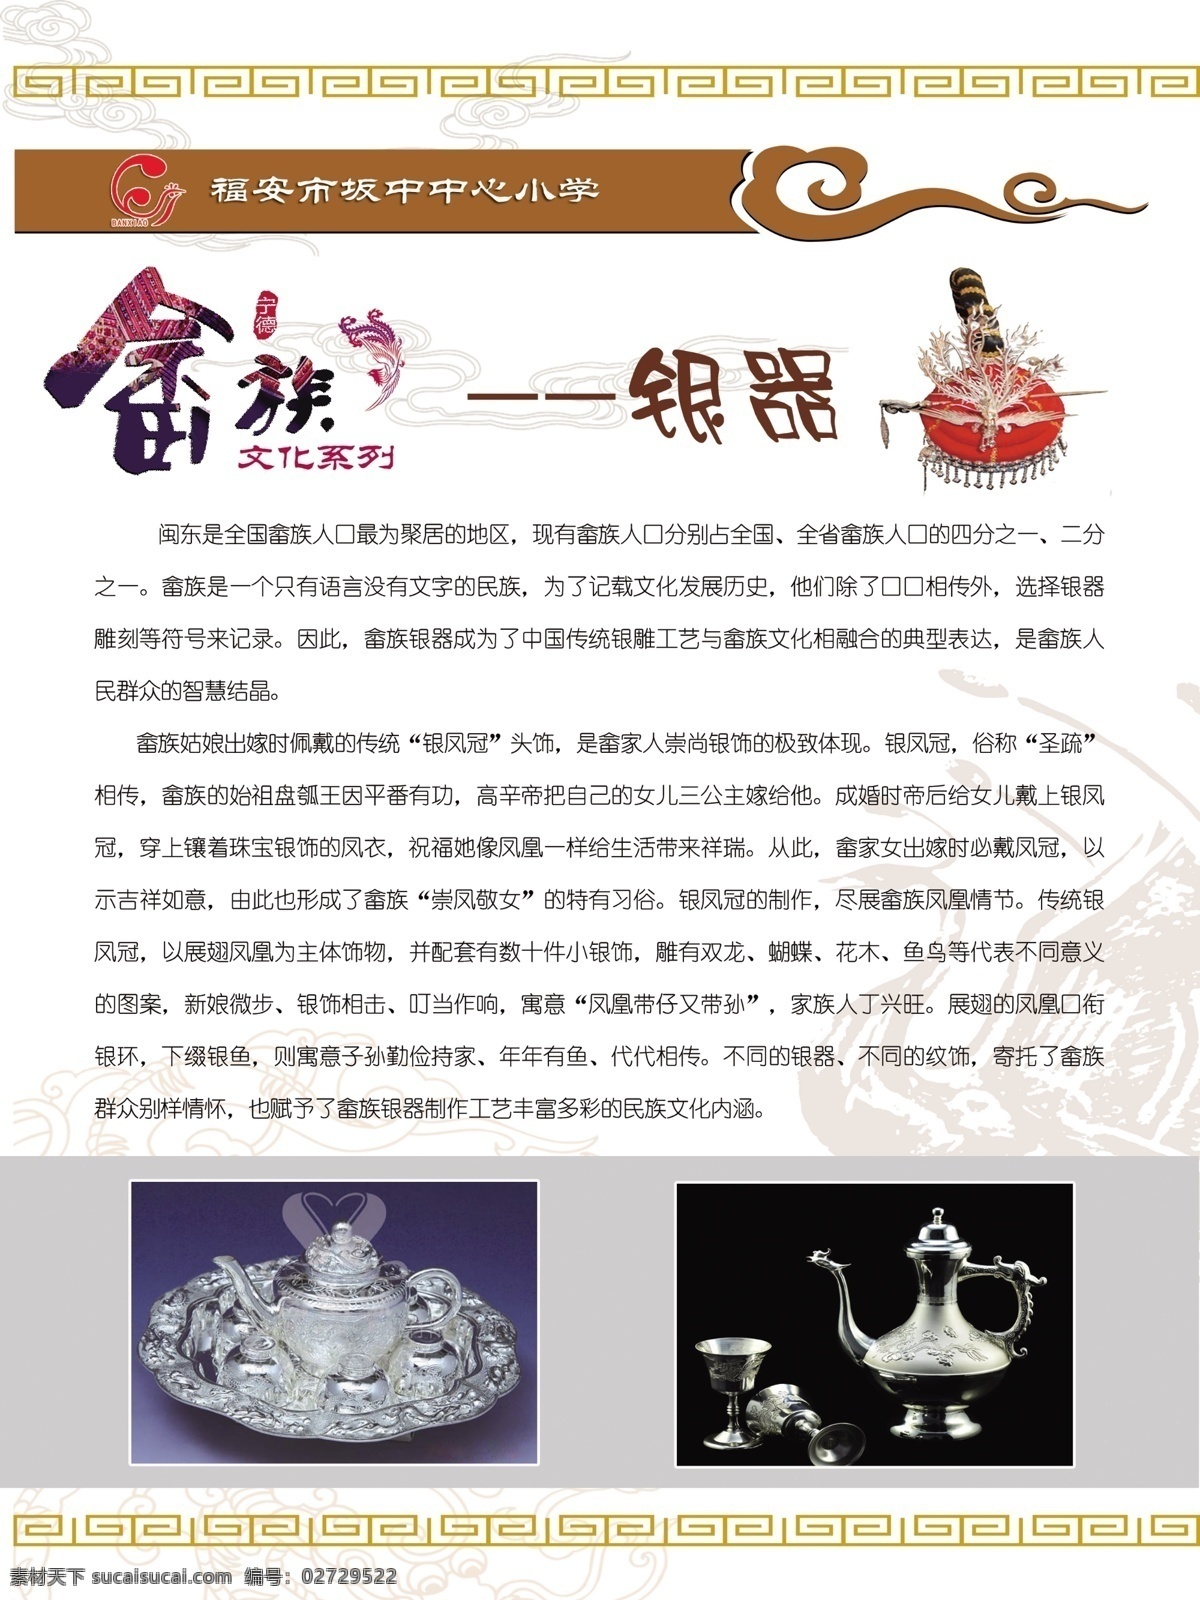 畲族银器 畲族文化 畲族 元素 特色文化 系列展板 文化 系列 展板 文化艺术 传统文化